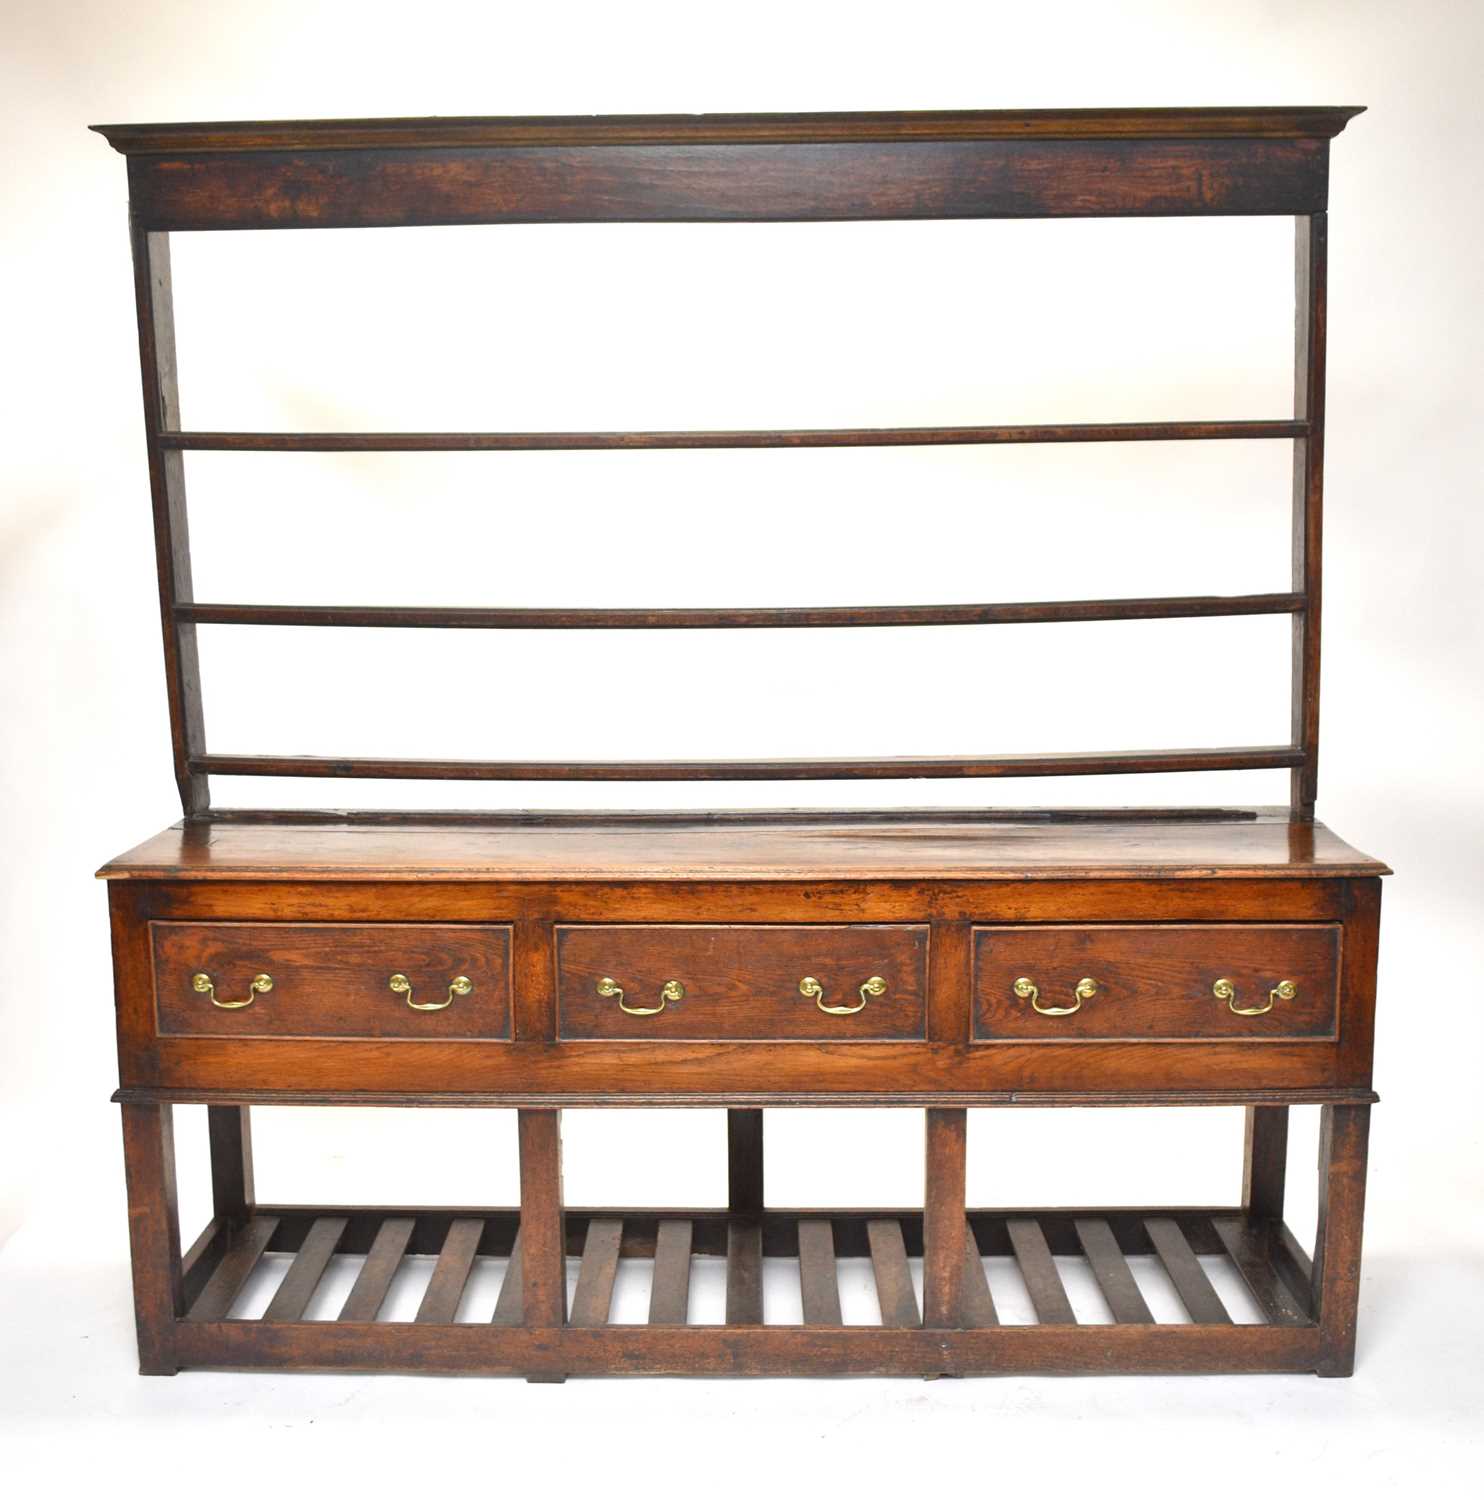 A George III oak dresser and rack